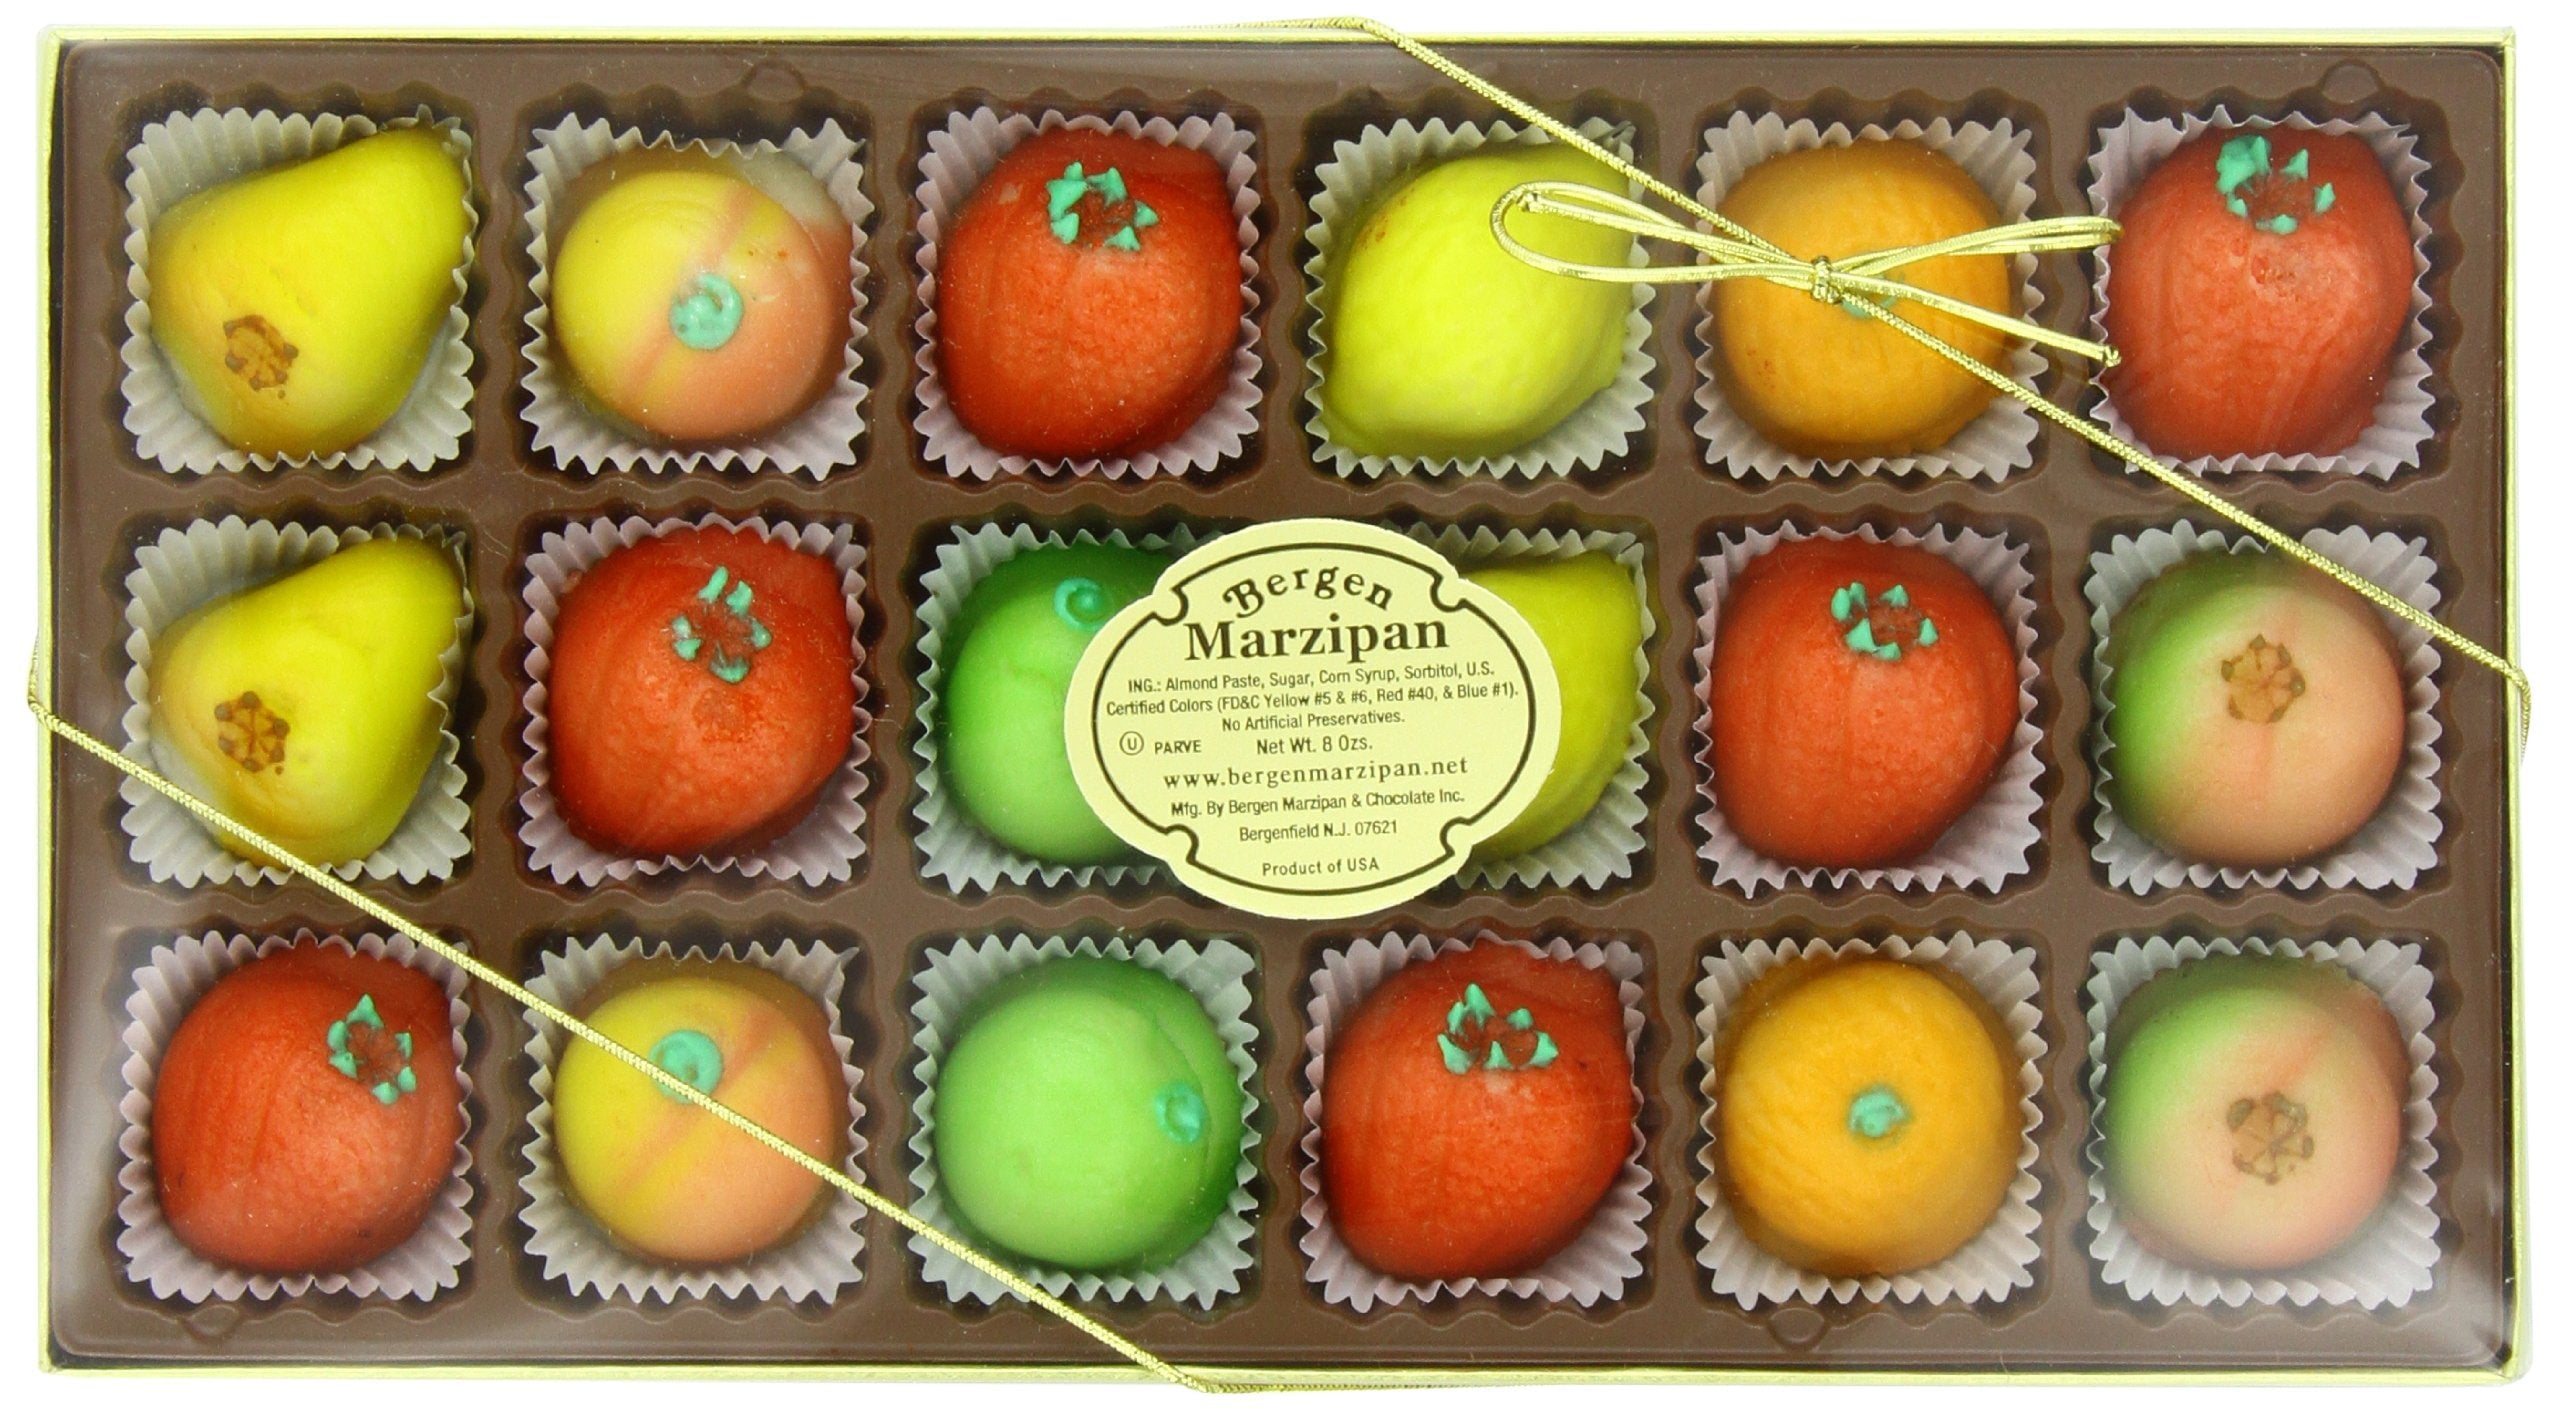 Bergen Marzipan M-1 Assorted Fruit, 8 Ounce 8 Ounce (Pack of 1) - Walmart.com